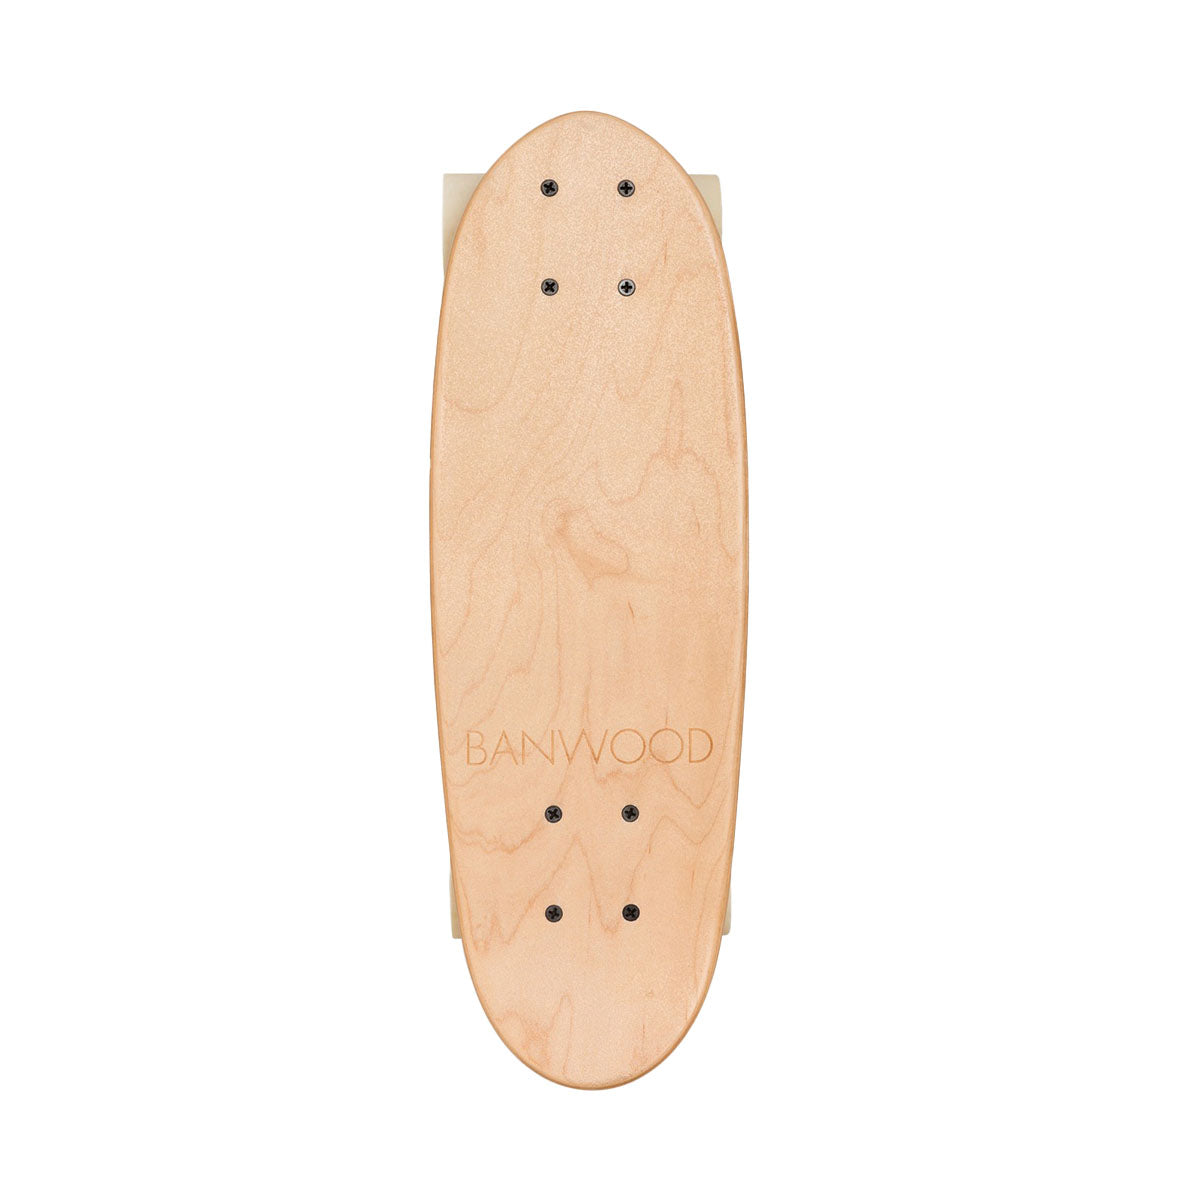 Voor stoere kinderen is dit toffe Banwood skateboard in nature ideaal! Dit skateboard is een klein cruiserboard, speciaal ontworpen voor zowel beginners als gevorderde skateboarders. VanZus